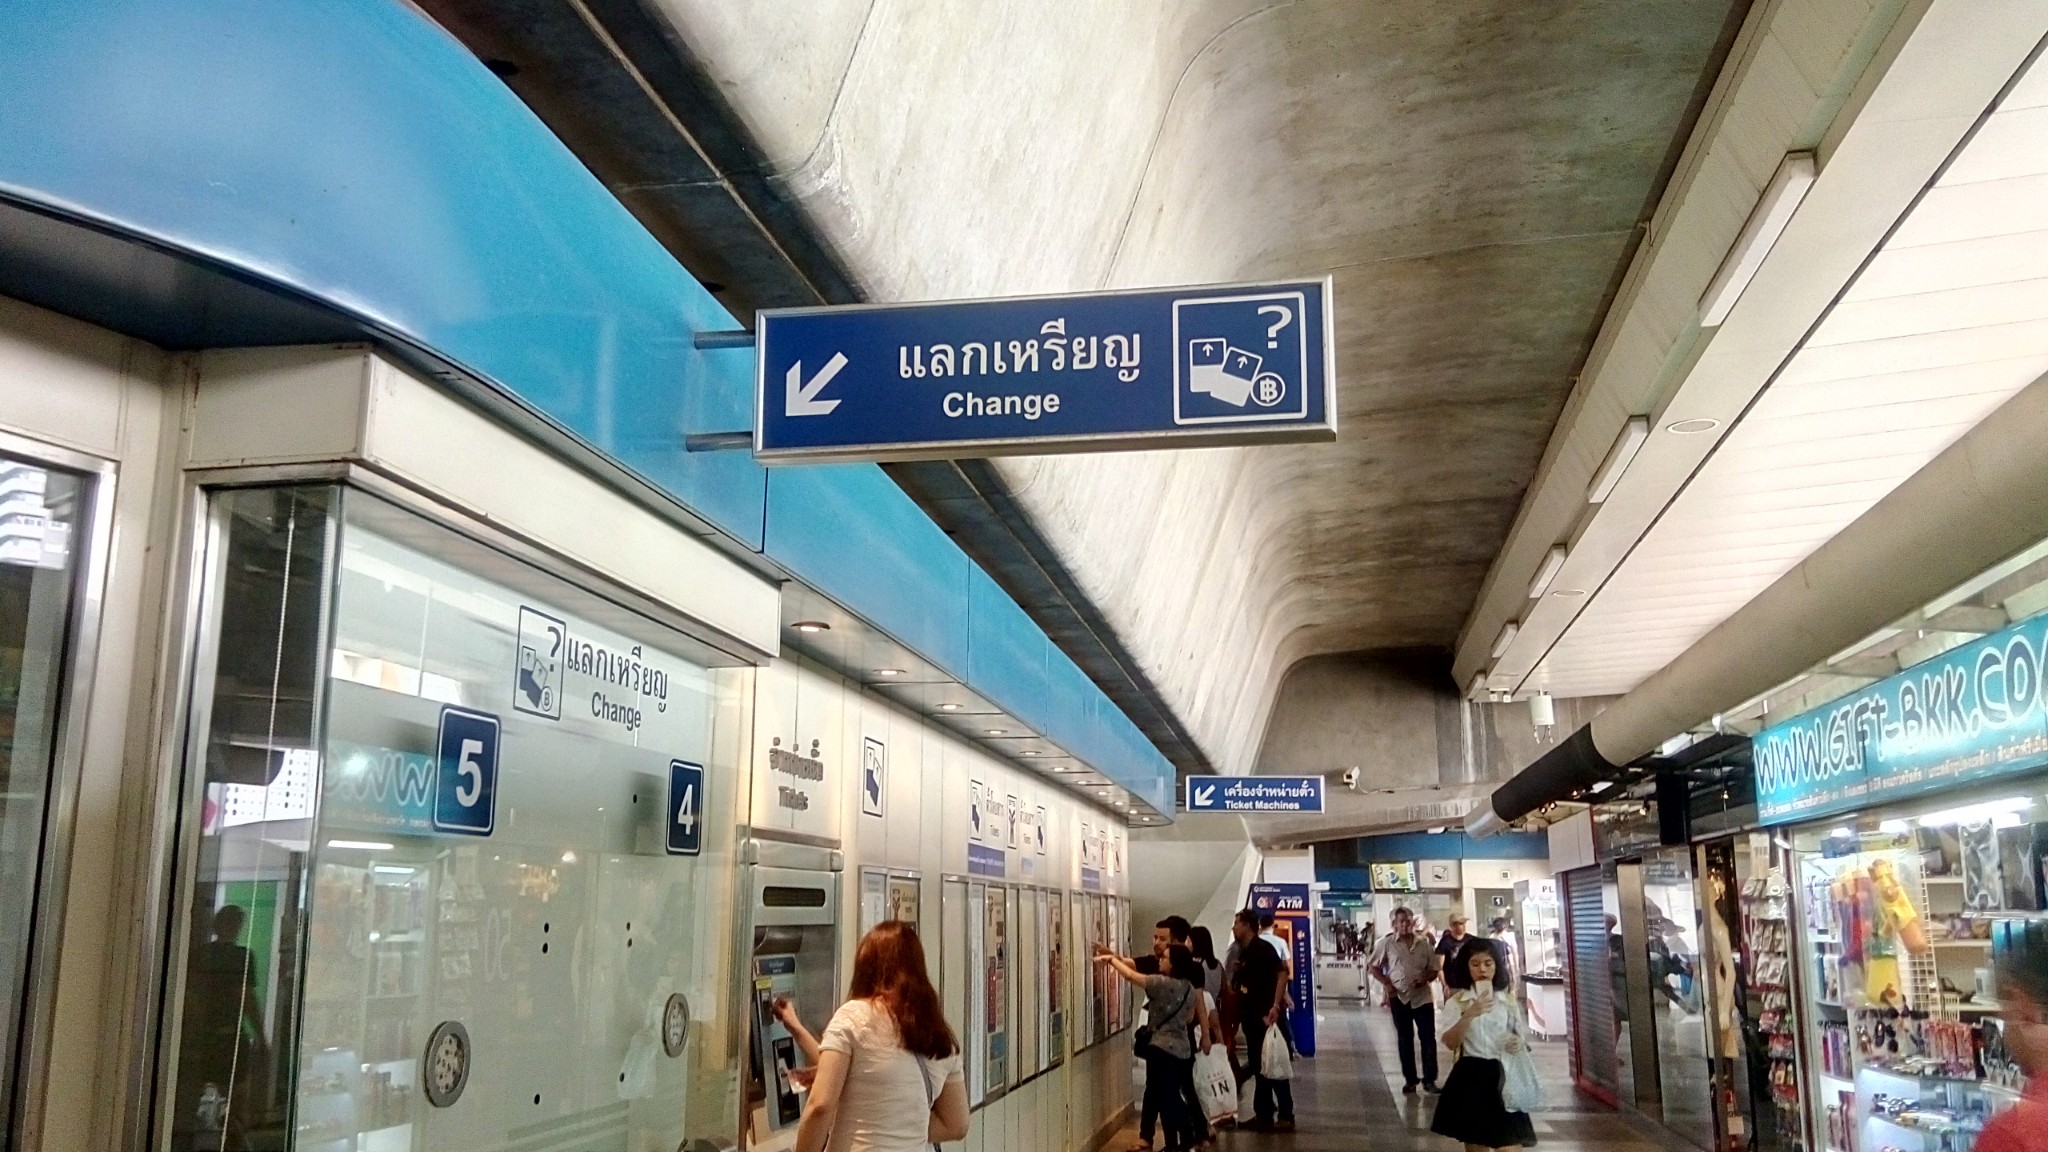 曼谷的主要旅游景点地铁站_曼谷的主要旅游景点地铁站叫什么